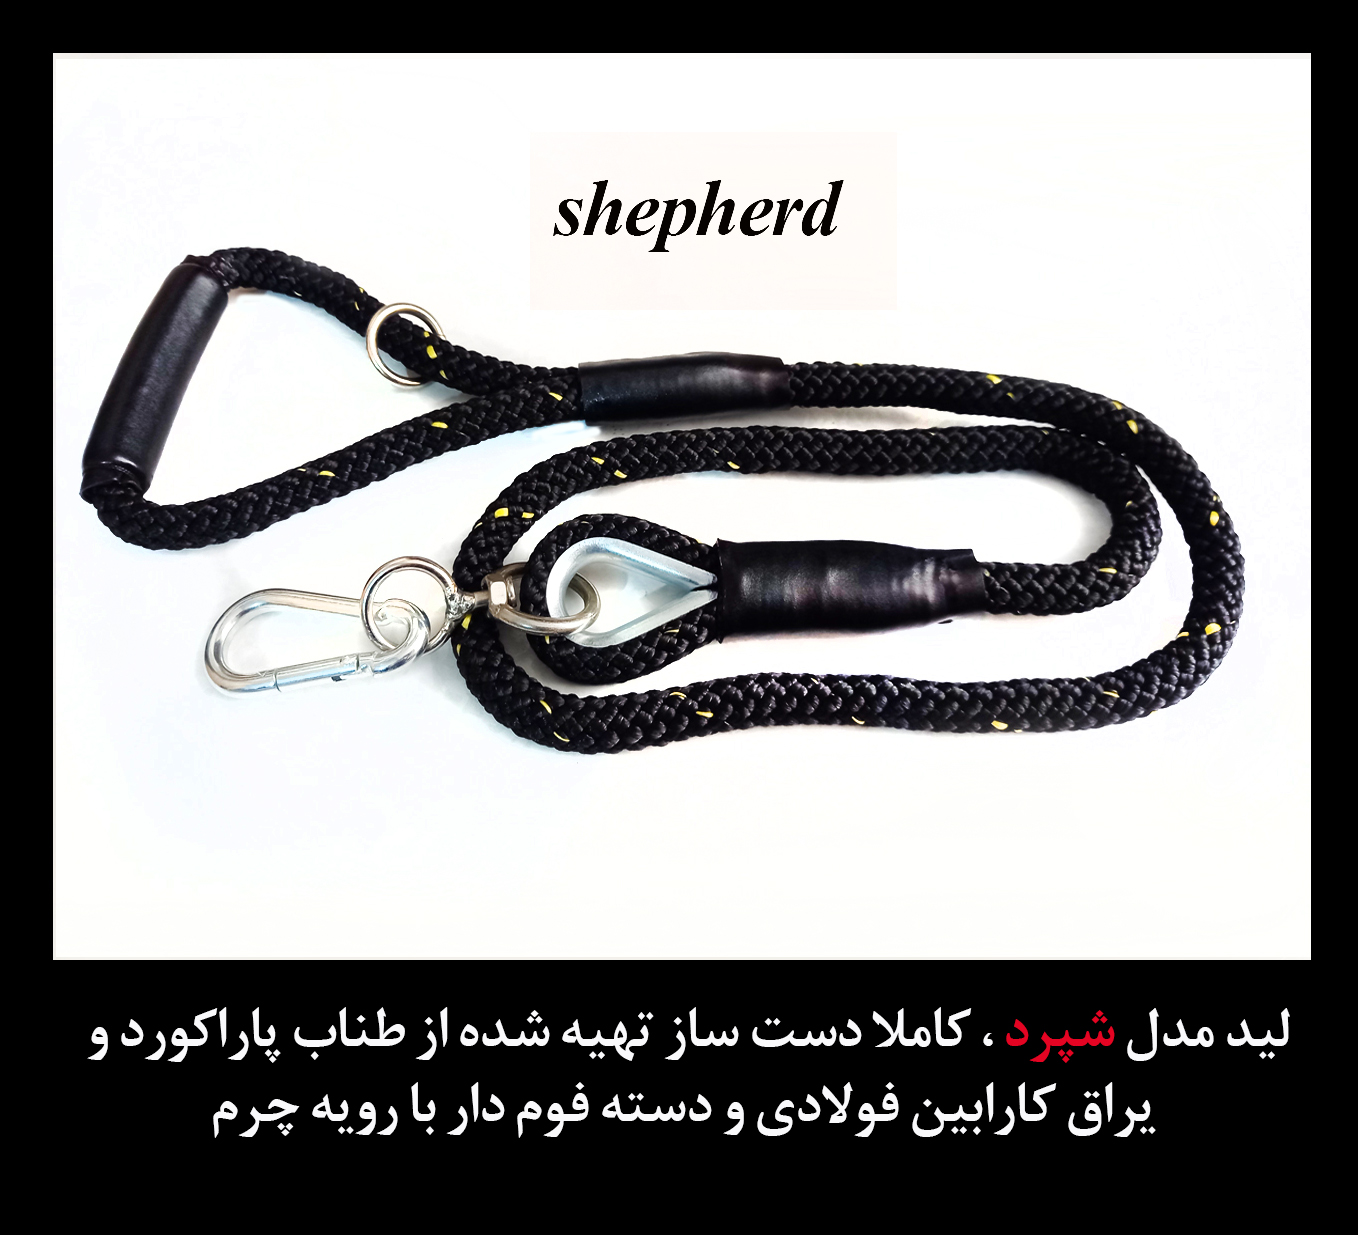 تهیه شده از طناب پاراکورد و یراق فولادی و با دوام بالا مخصوص انواع سگهای سنگین وزن